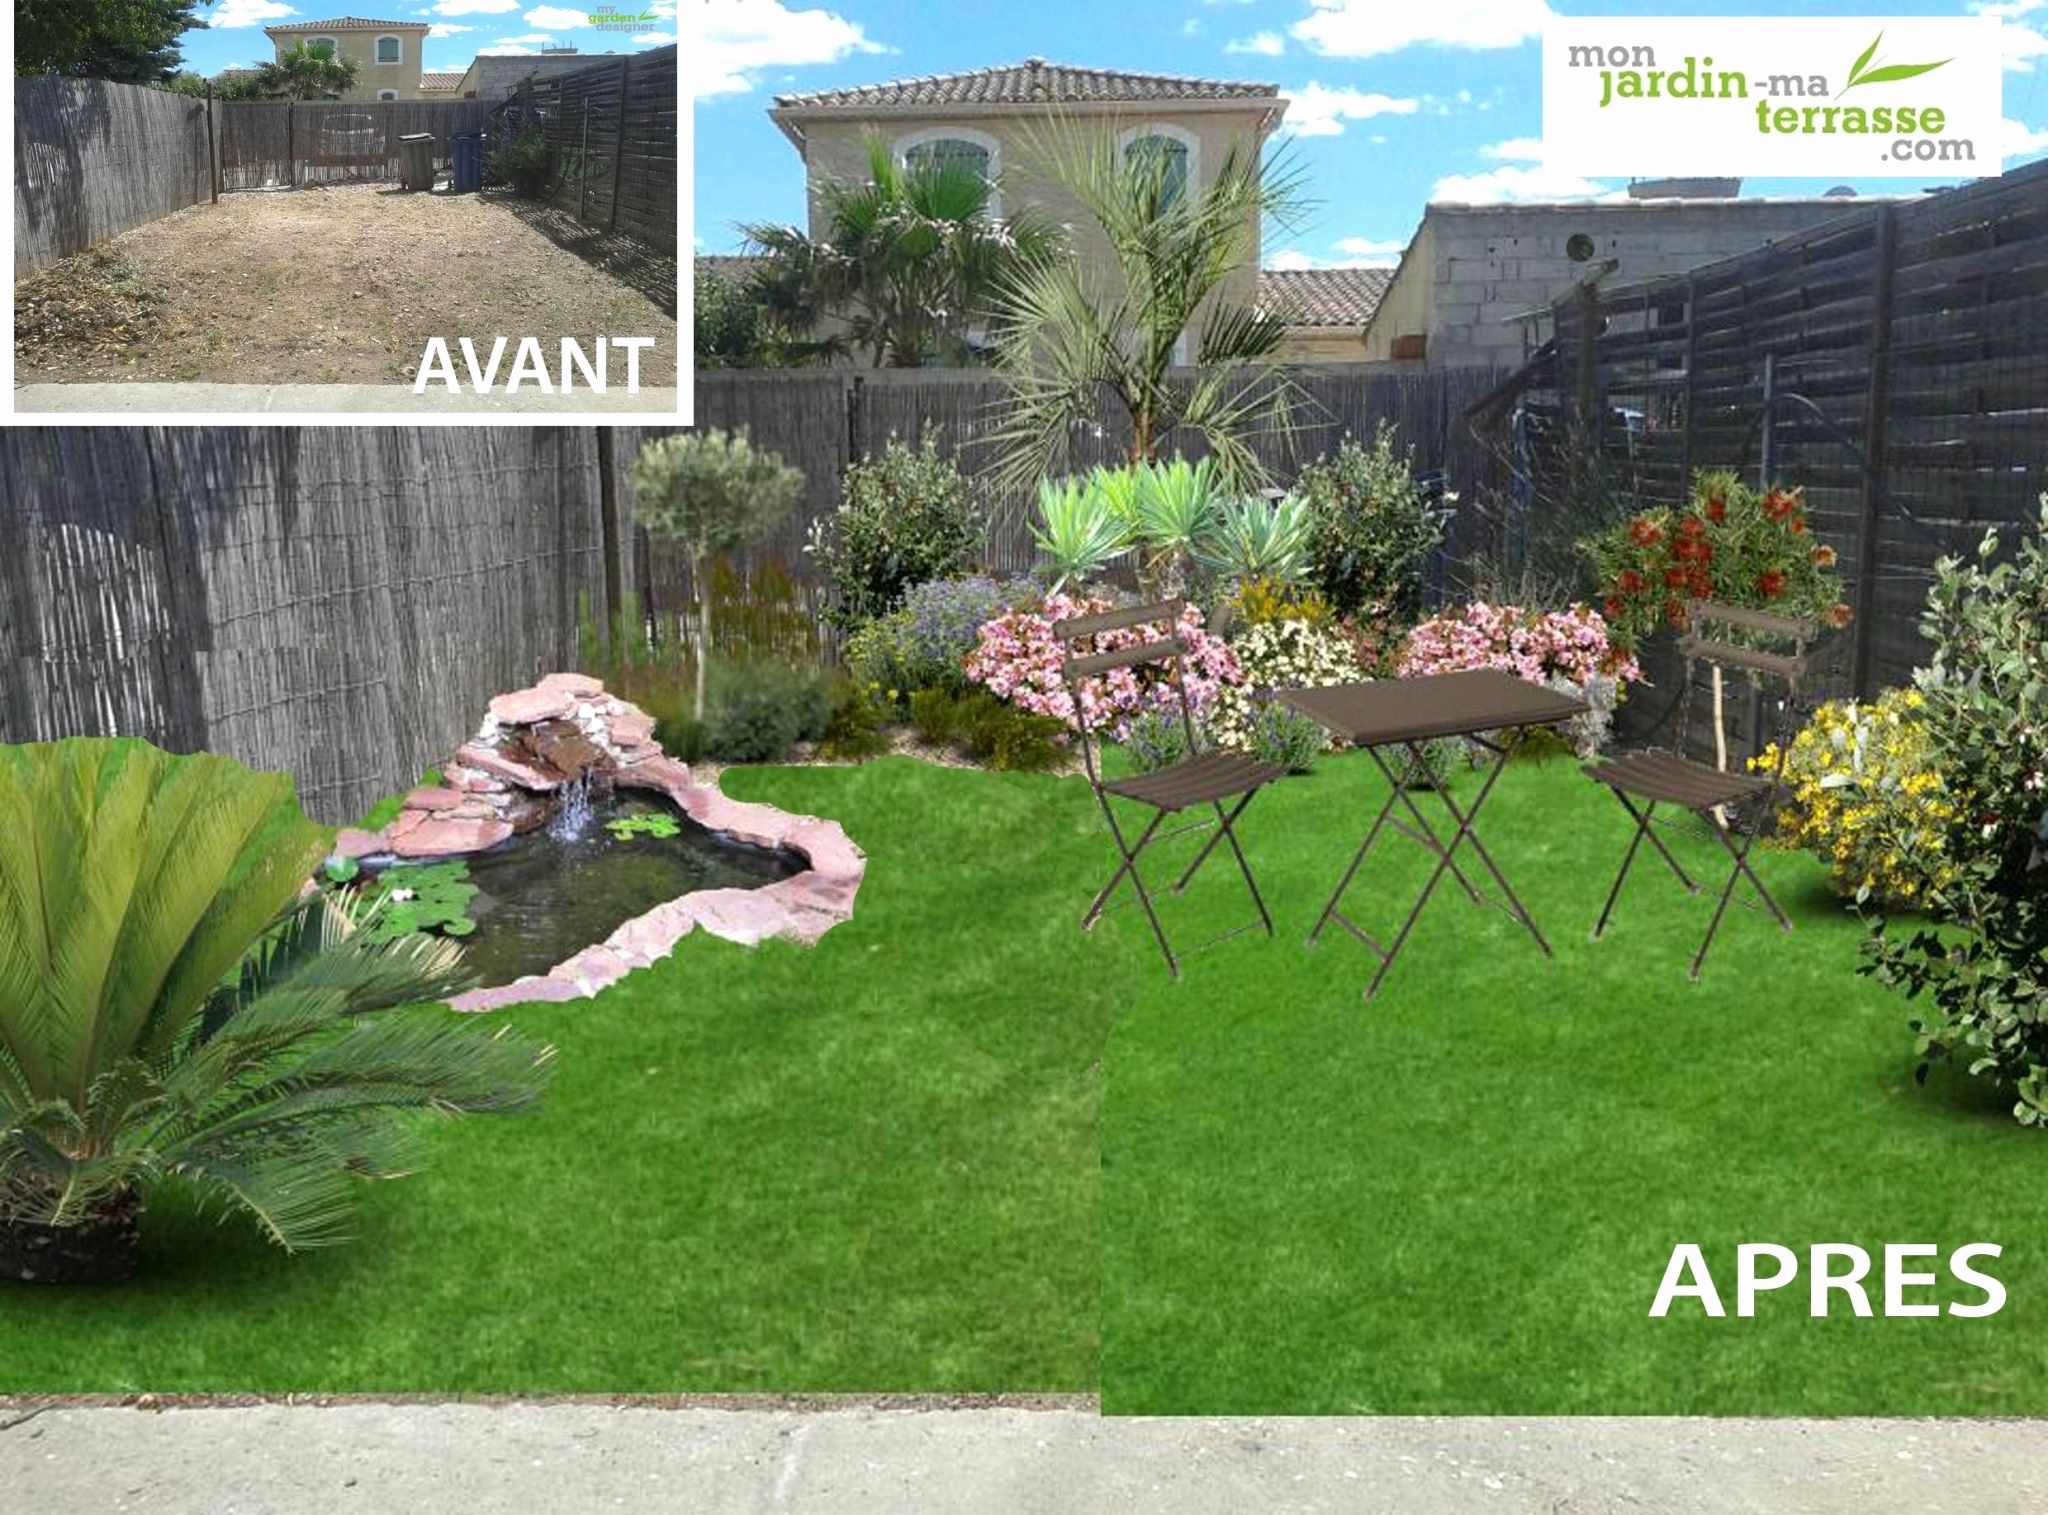 Aménager Un Jardin Unique Idee Amenagement Jardin Devant Maison – Gamboahinestrosa